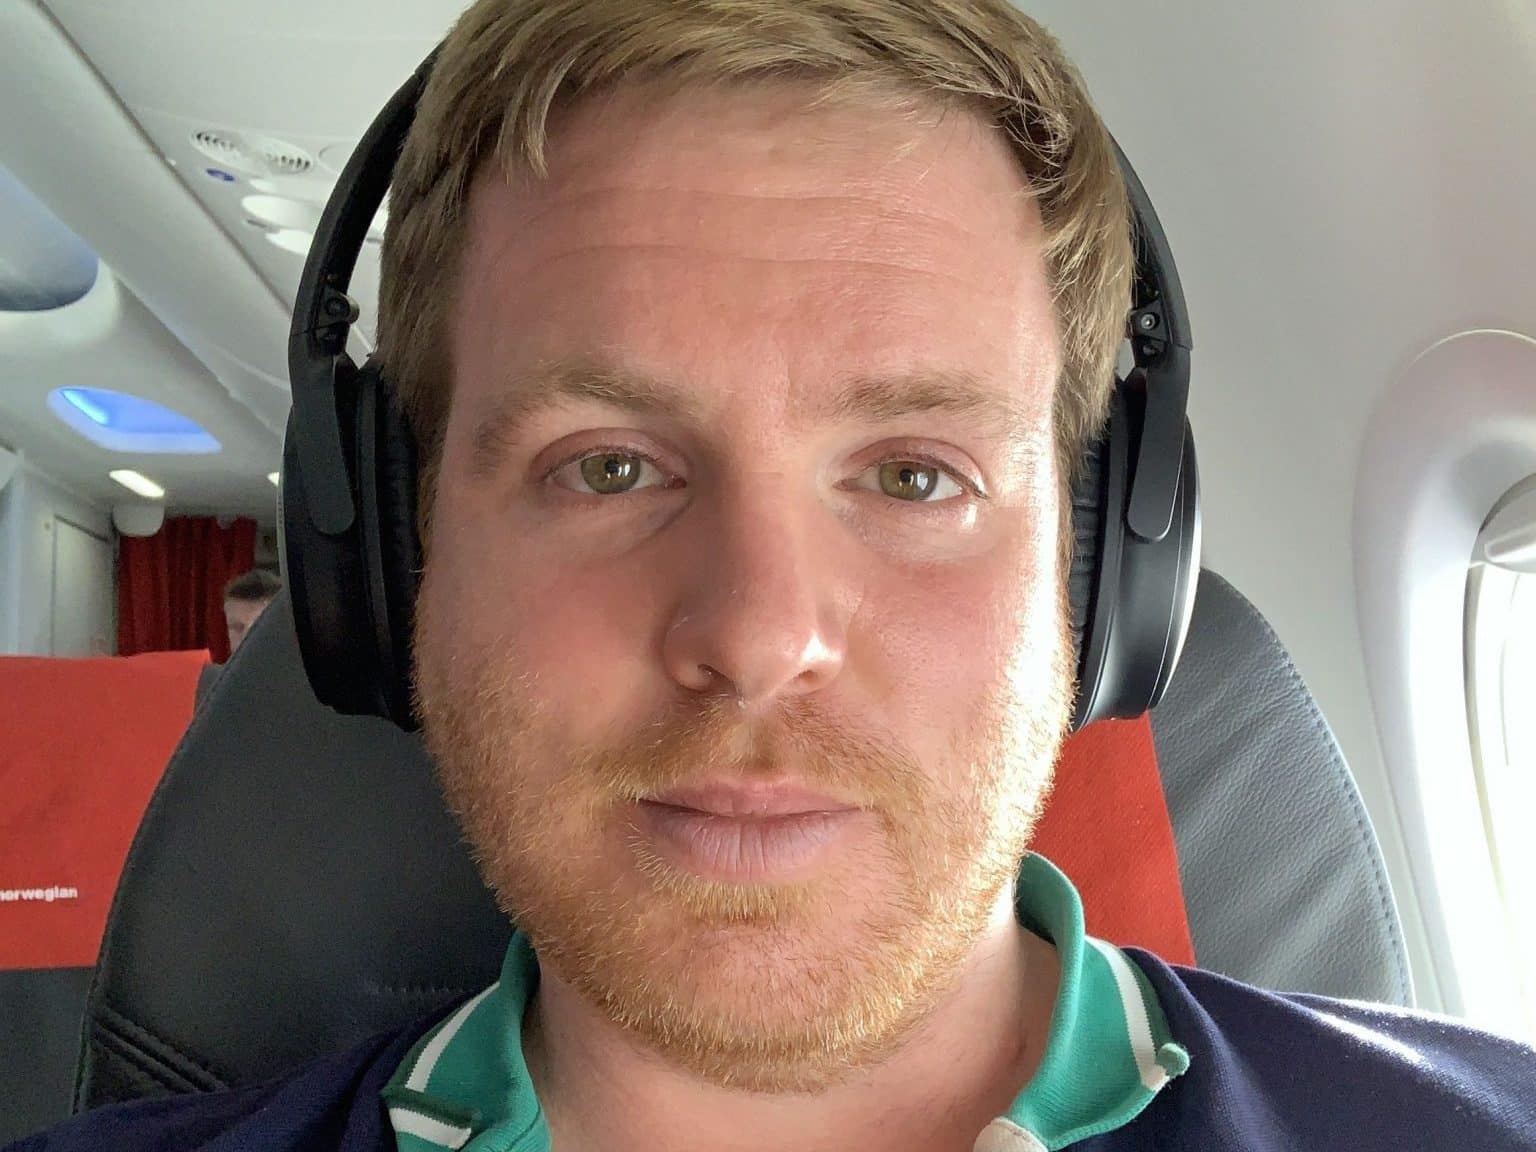 Müde bin ich, geht zur Ruh': Dank der Geräuschreduzierung (ANC) des Bose Quietcomfort QC35 kann man im Flugzeug ganz wunderbar schlafen. Foto: Sascha Tegtmeyer